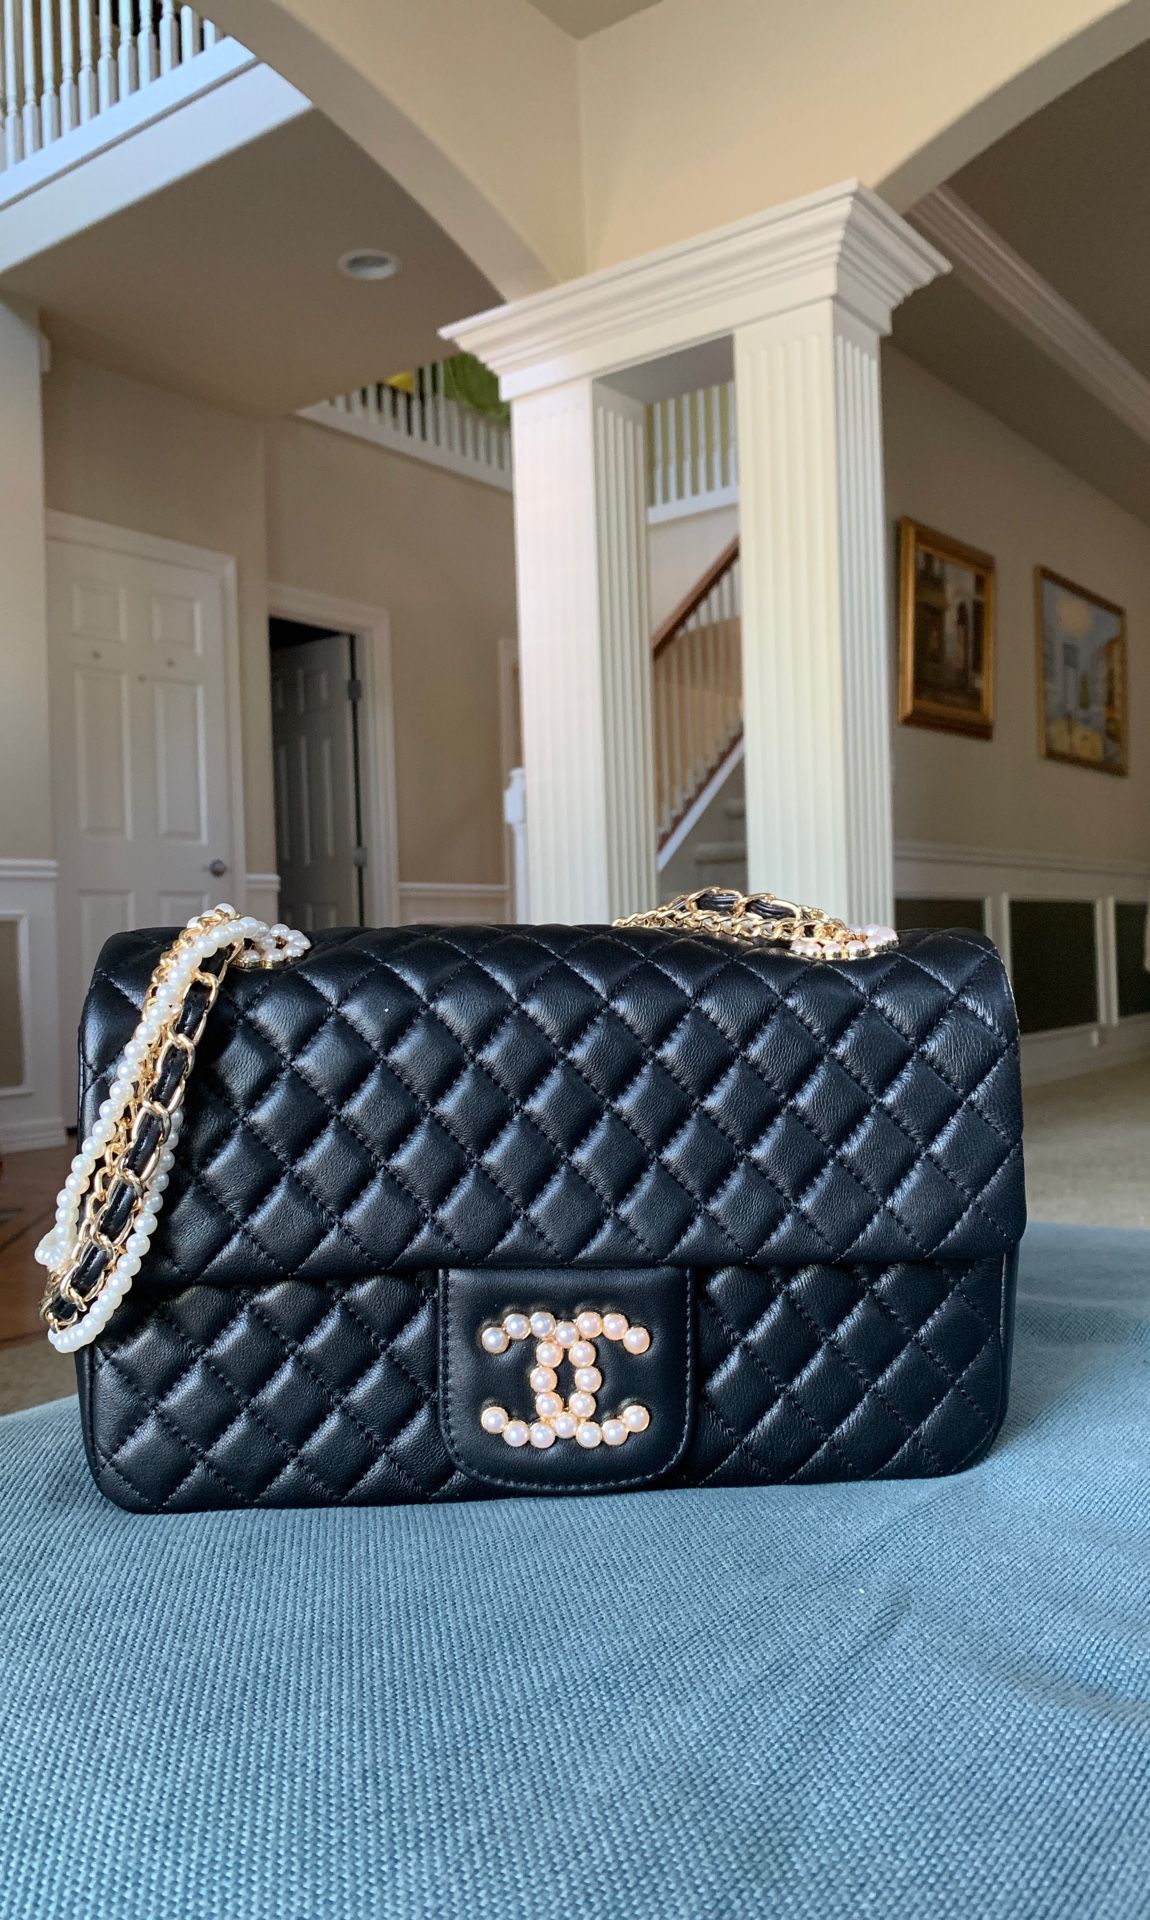 Chanel bag $450